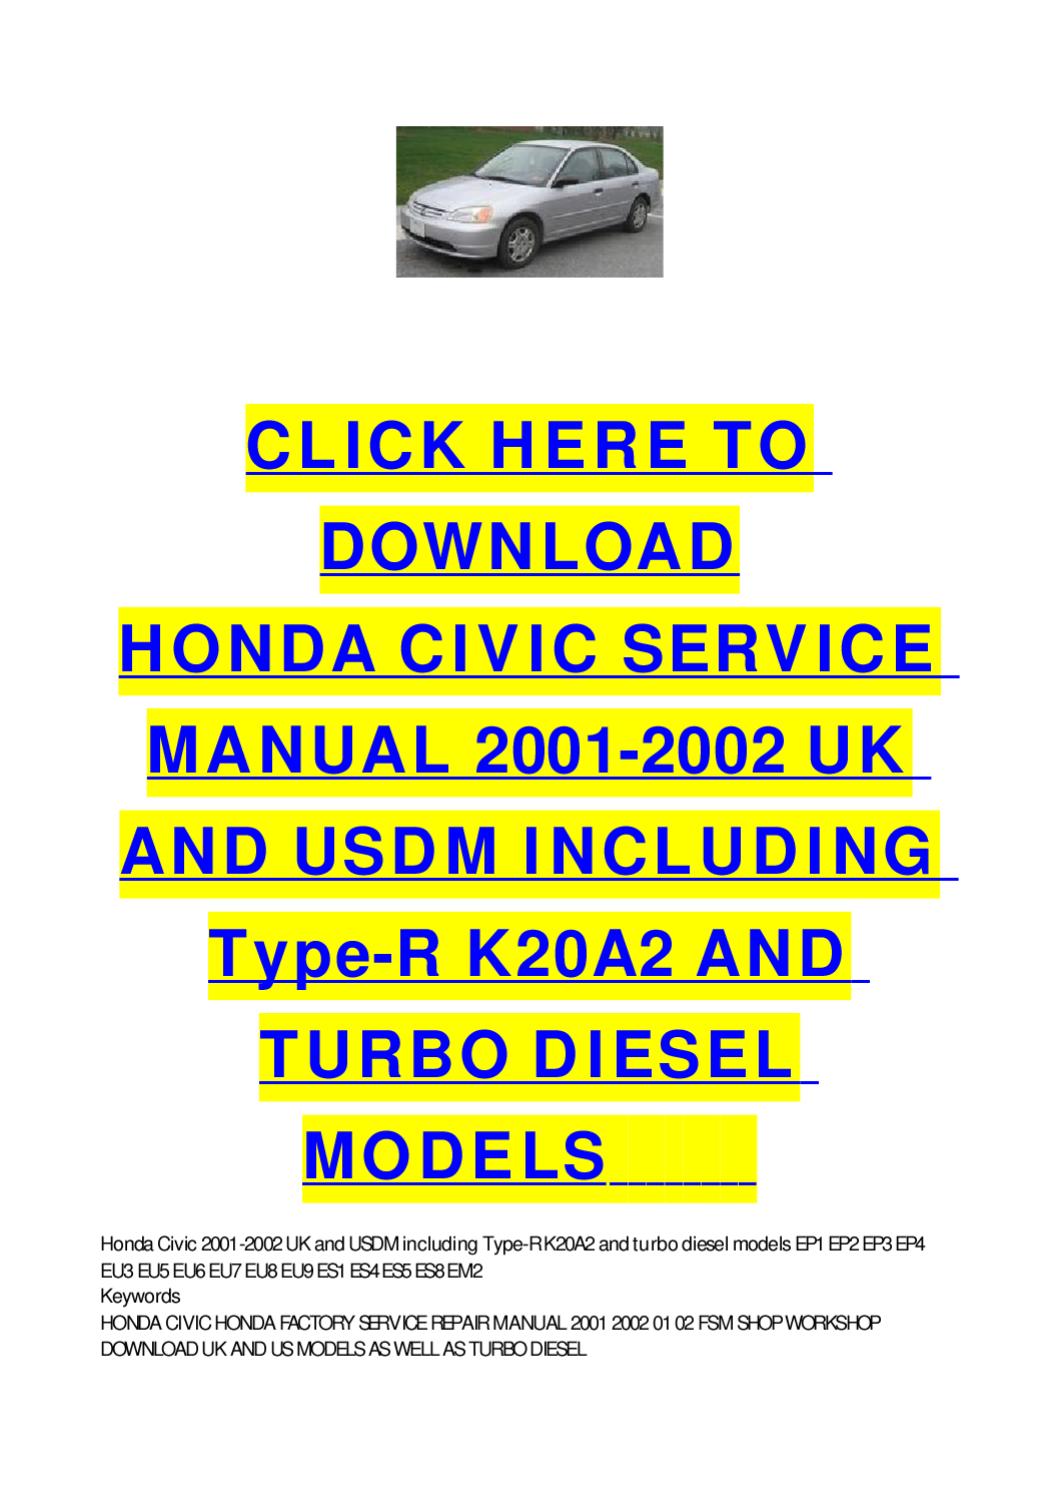 2008 honda civic repair manual free download pdf